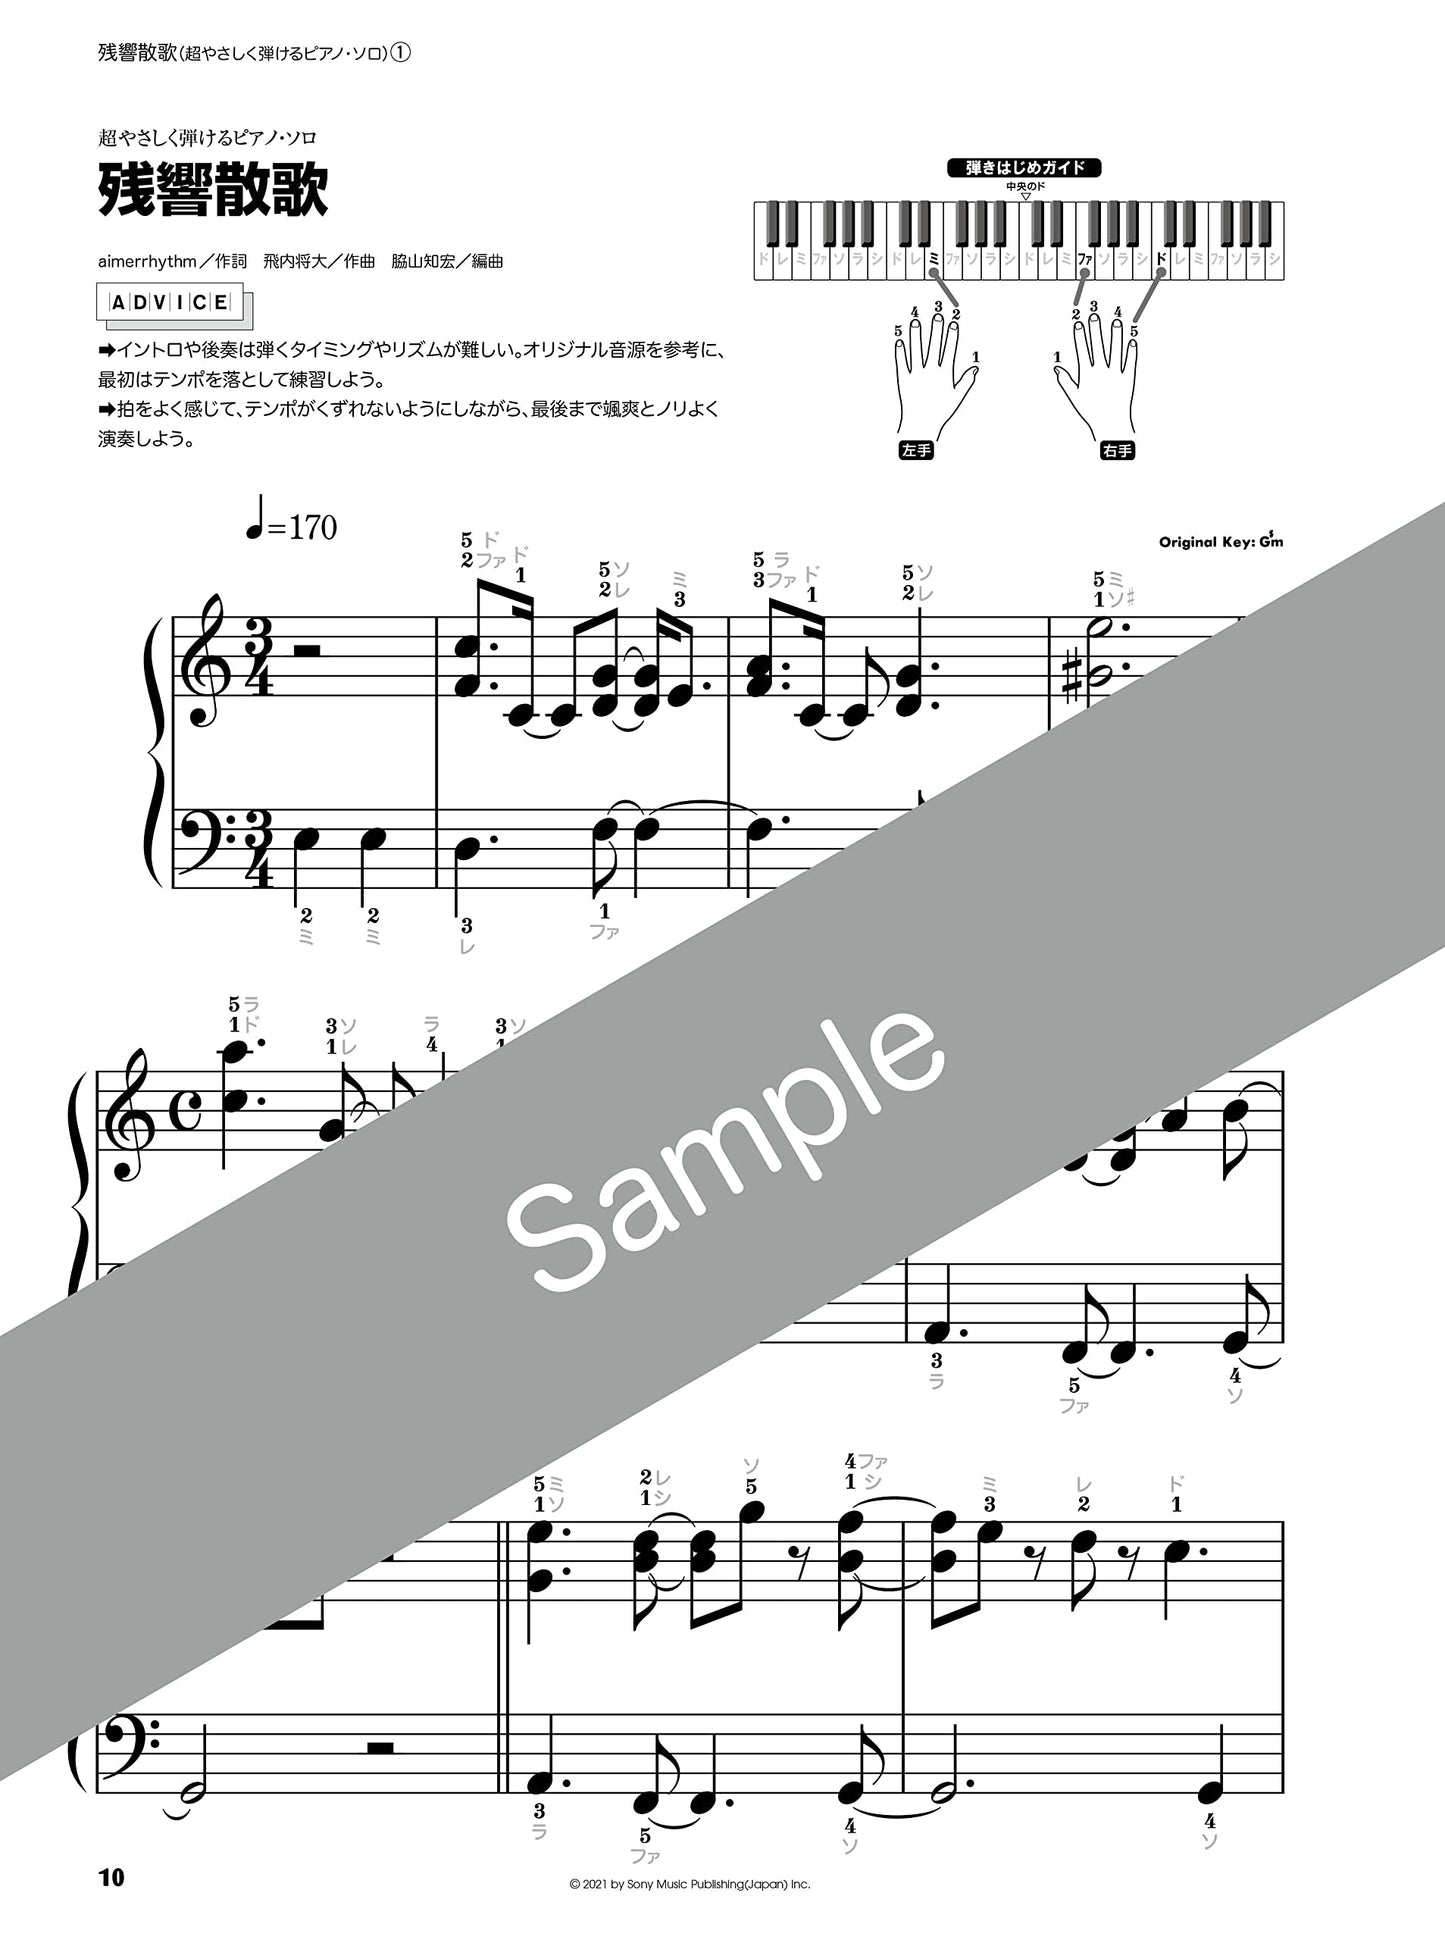 Demon Slayer(Anime): Zankyosanka / Asa ga kuru Piano Solo(Easy / Intermediate) Sheet Music Book